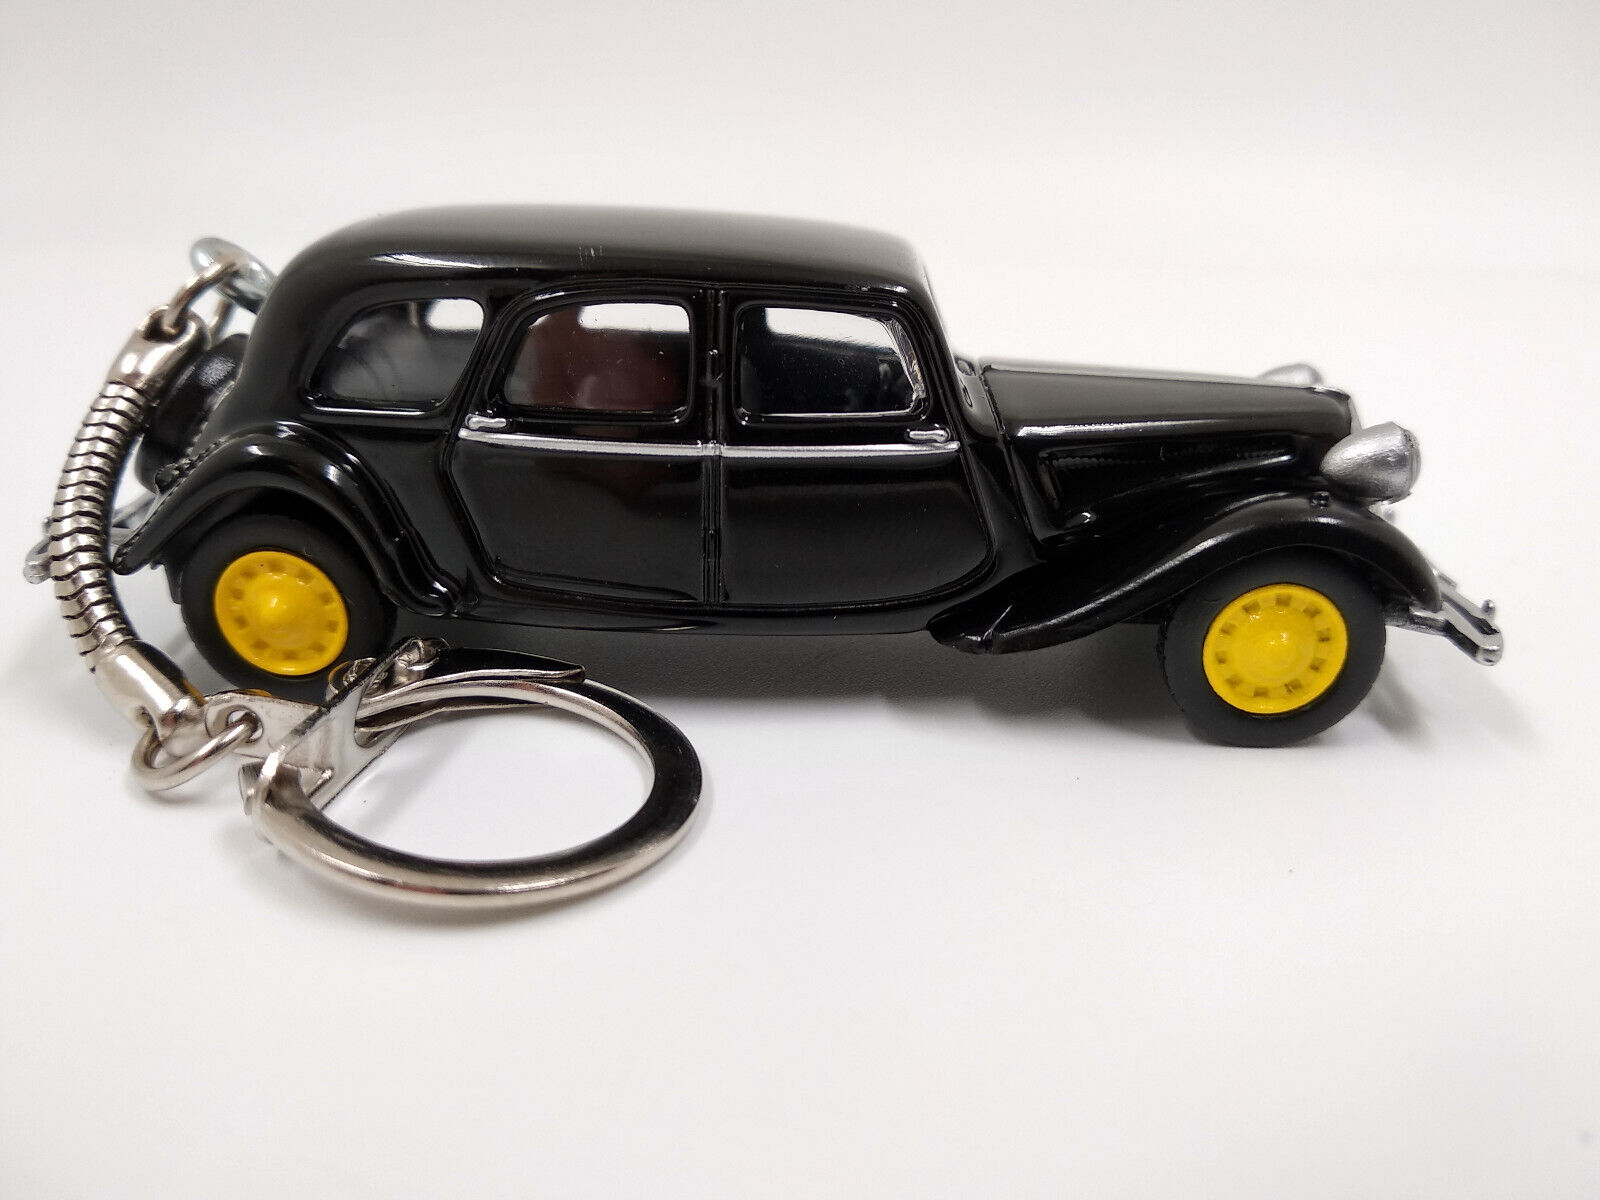 Porte clé Citroën Traction 1939 noir en métal idée cadeau sympa